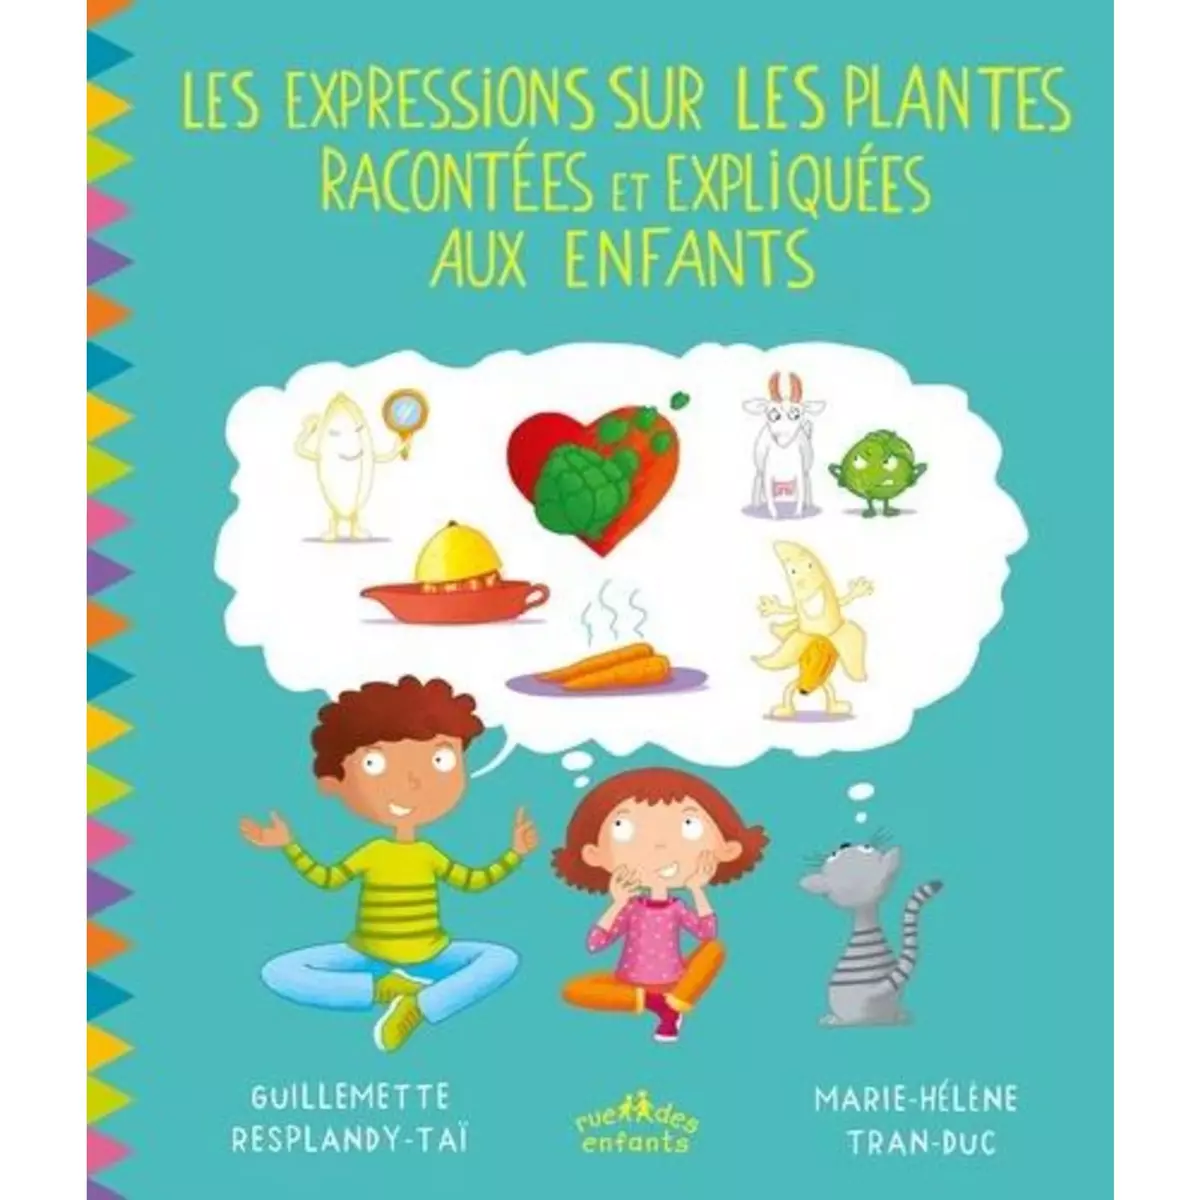  LES EXPRESSIONS SUR LES PLANTES RACONTEES ET EXPLIQUEES AUX ENFANTS, Resplandy-Taï Guillemette